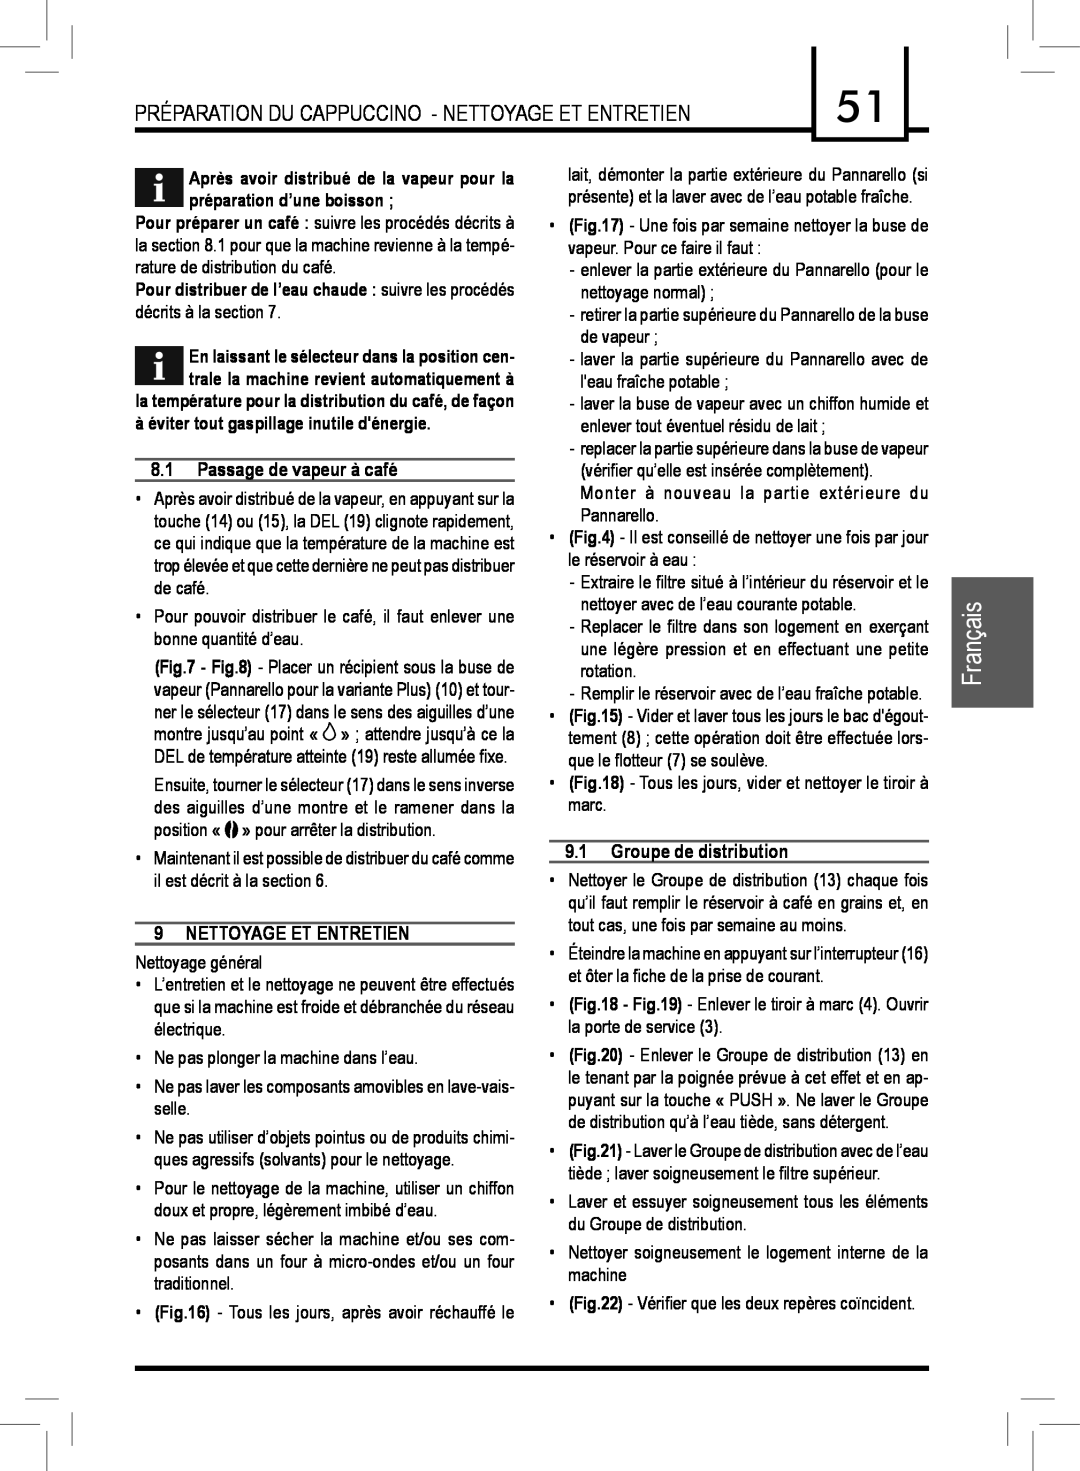 Saeco Coffee Makers PLUS manual Français, Passage de vapeur à café, Nettoyage Et Entretien, Groupe de distribution 